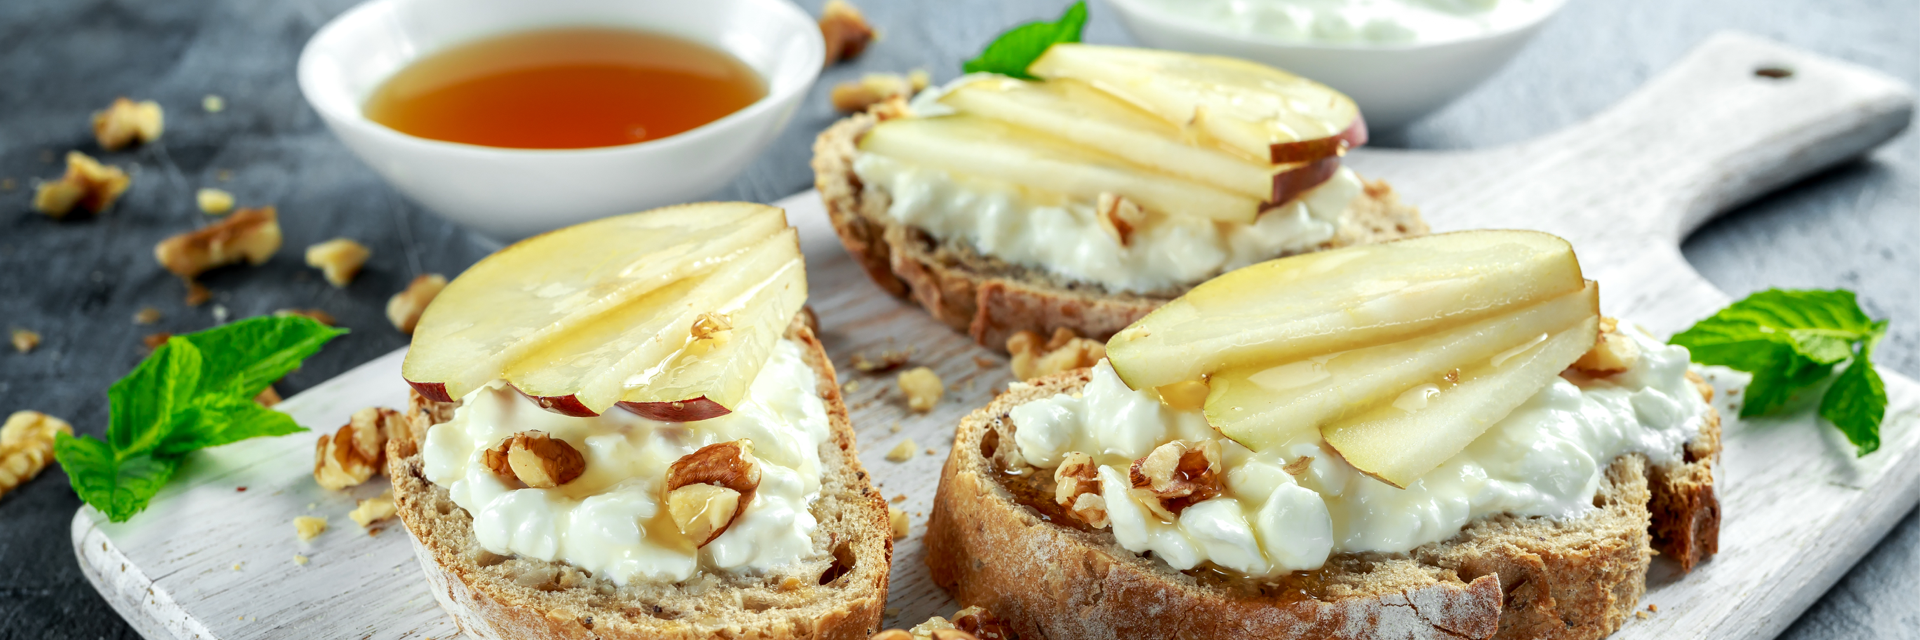 7 idées de sandwiches irrésistibles (et faciles) pour un lunch savoureux